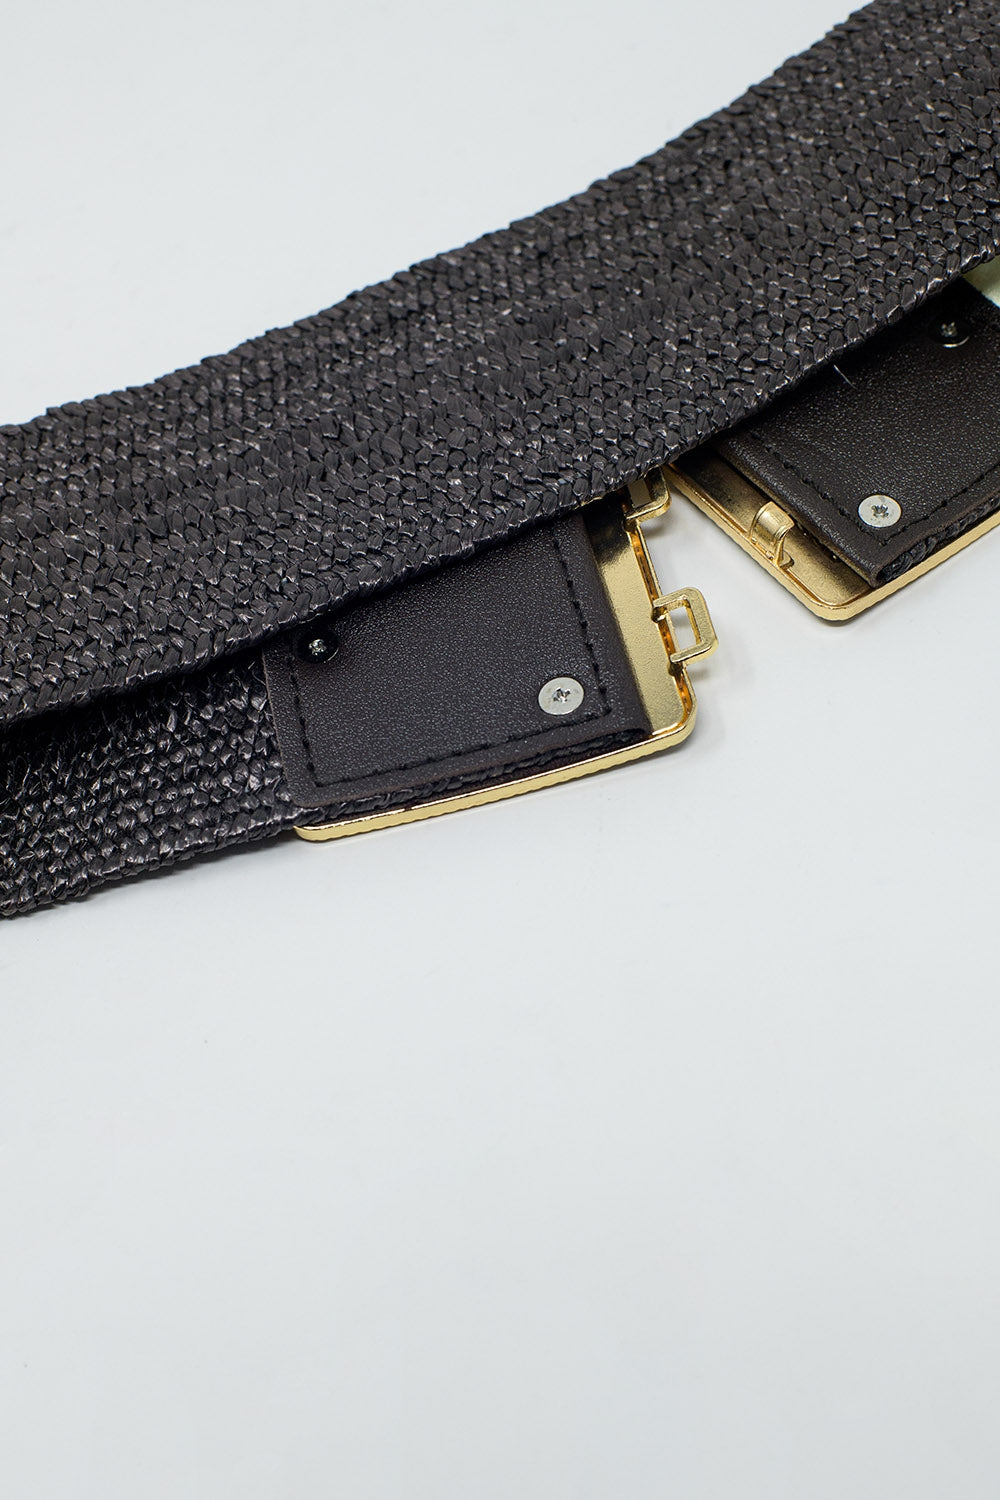 Cintura marrone intrecciata con fibbia quadrata con dettagli dorati